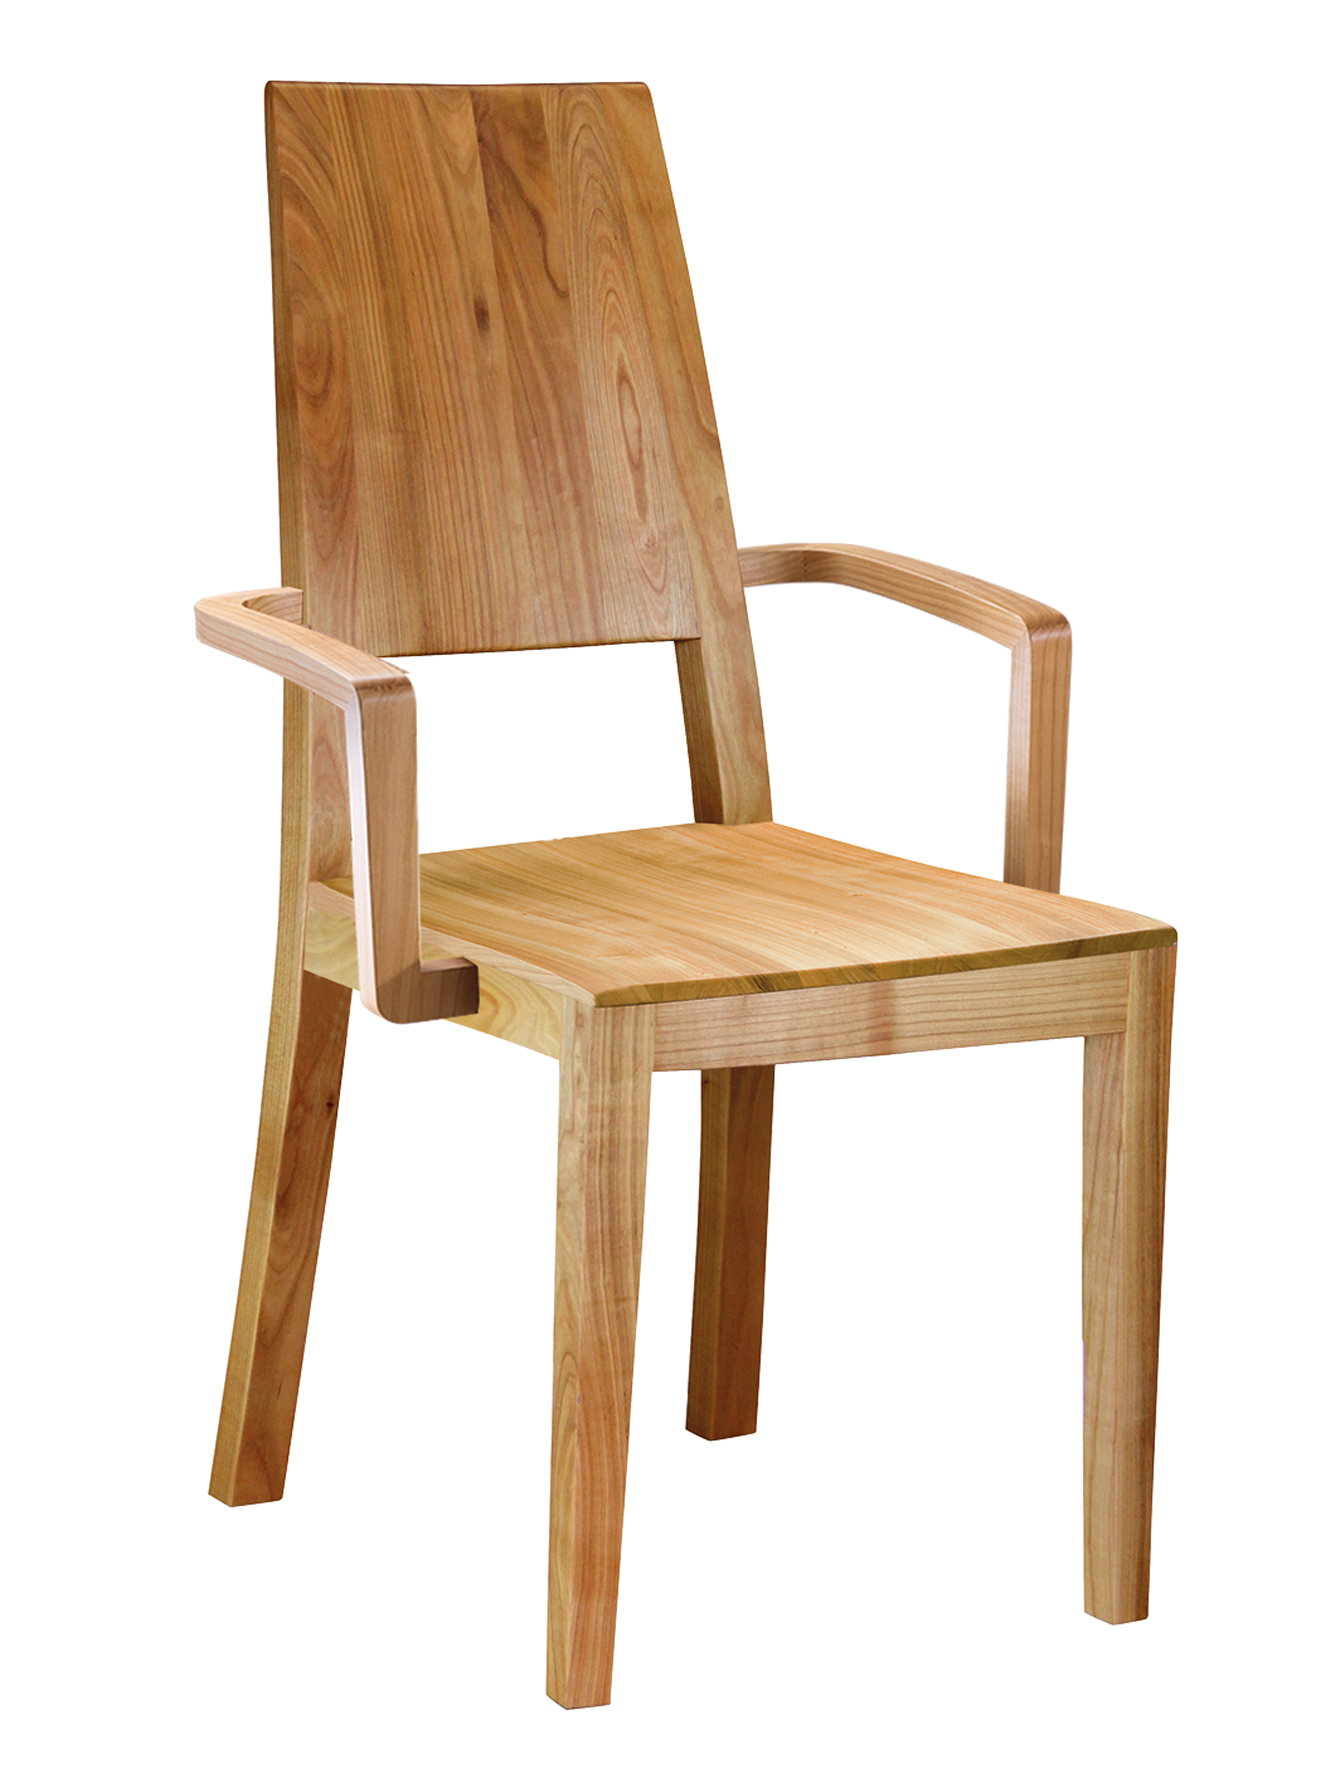 CLASSIC Stuhl mit Holzsitz, hohem Rücken und Armlehnen